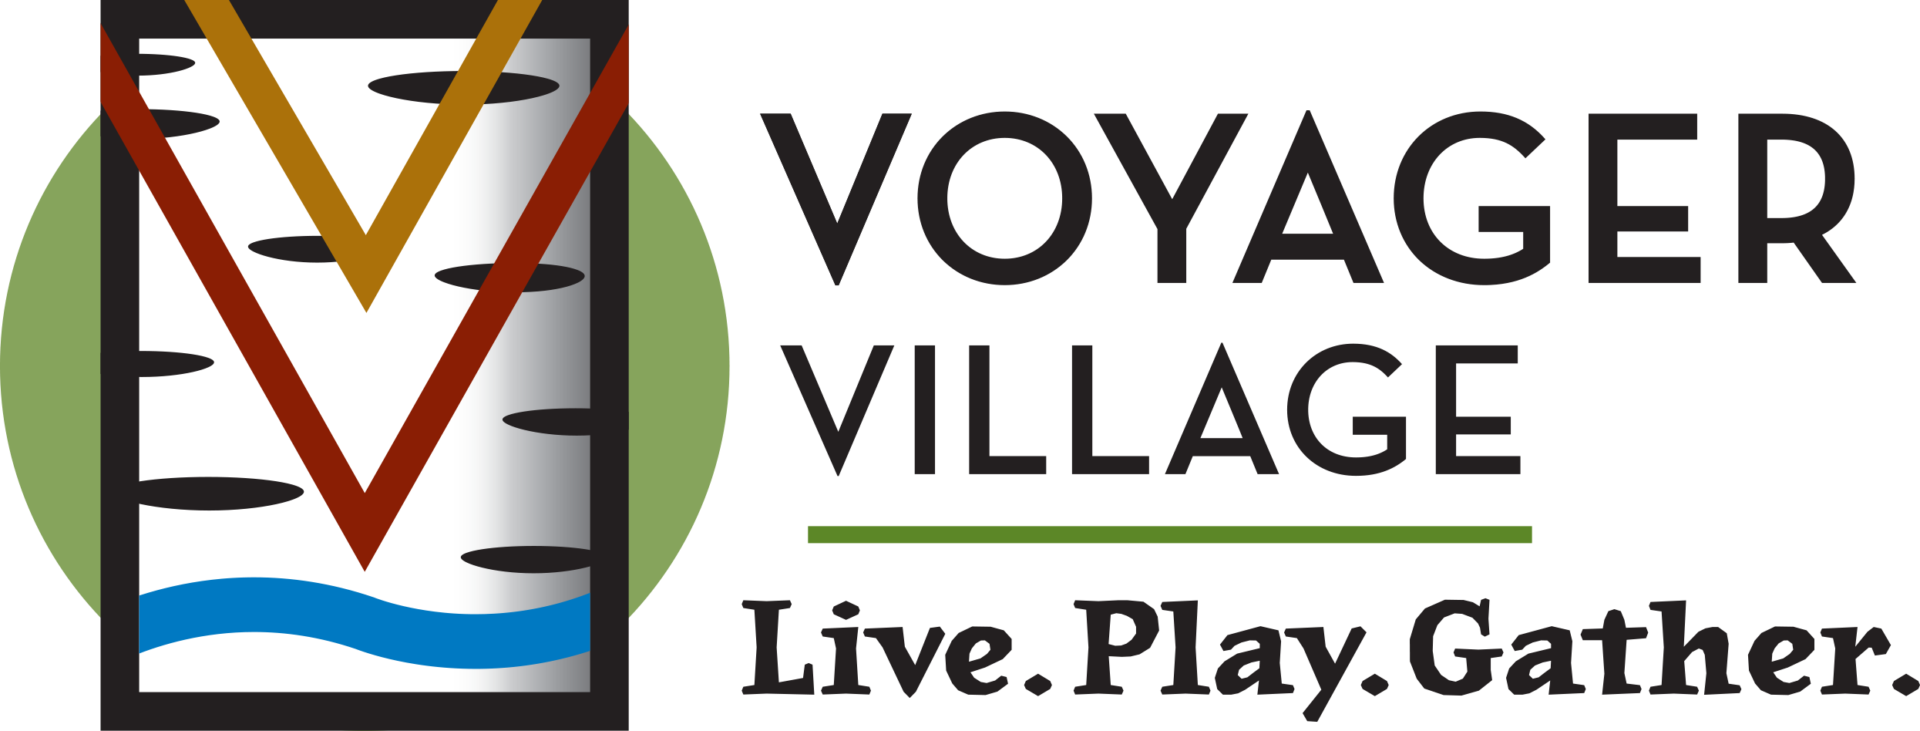 Voyager Village logo